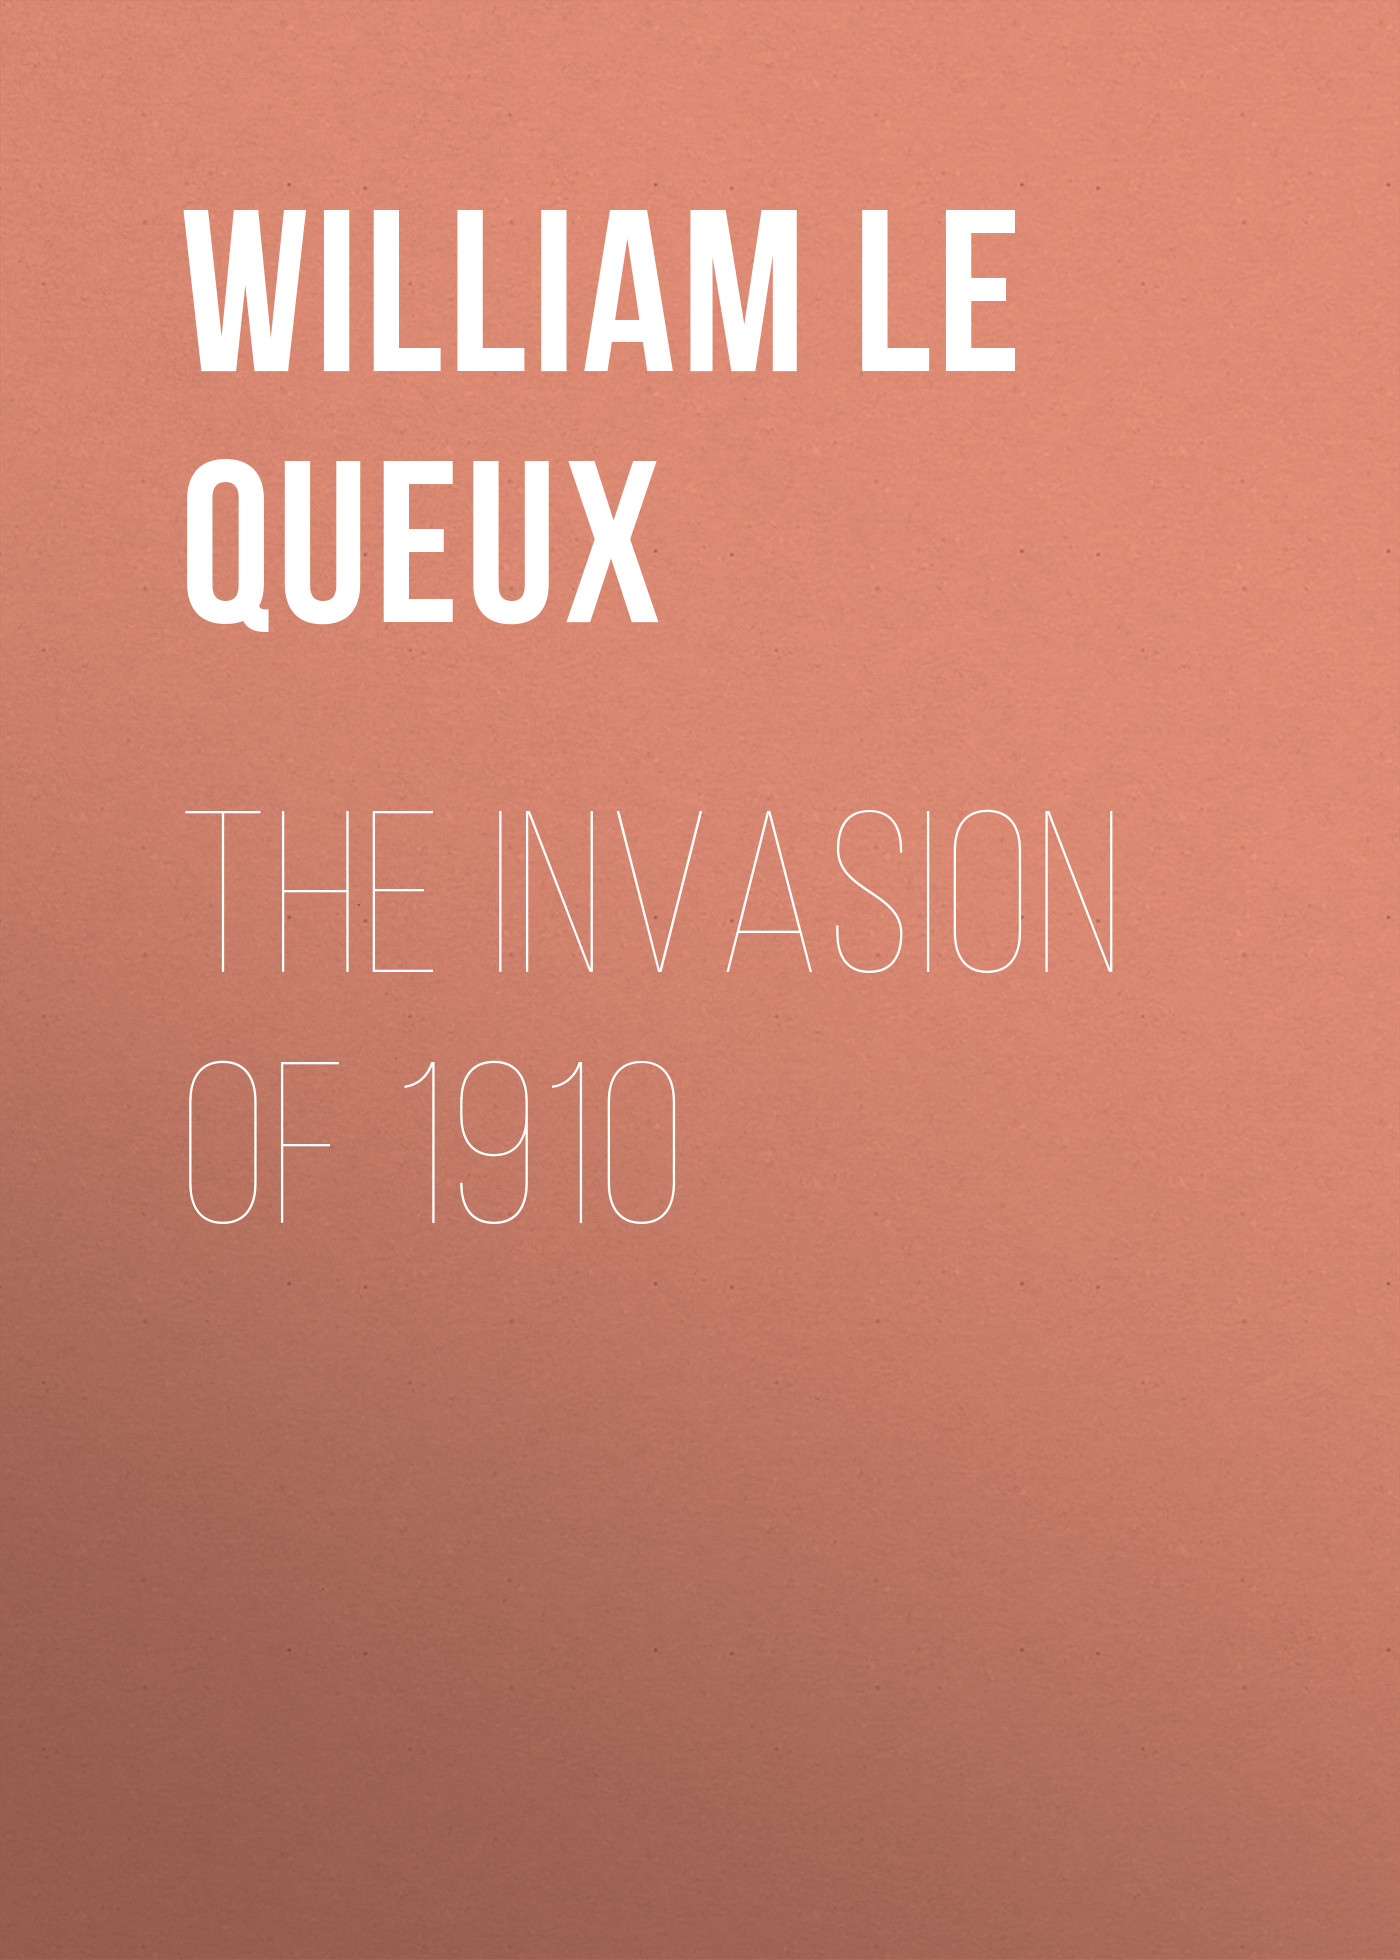 Книга The Invasion of 1910 из серии , созданная William Le Queux, может относится к жанру Иностранные языки, Зарубежная классика. Стоимость электронной книги The Invasion of 1910 с идентификатором 23163227 составляет 5.99 руб.